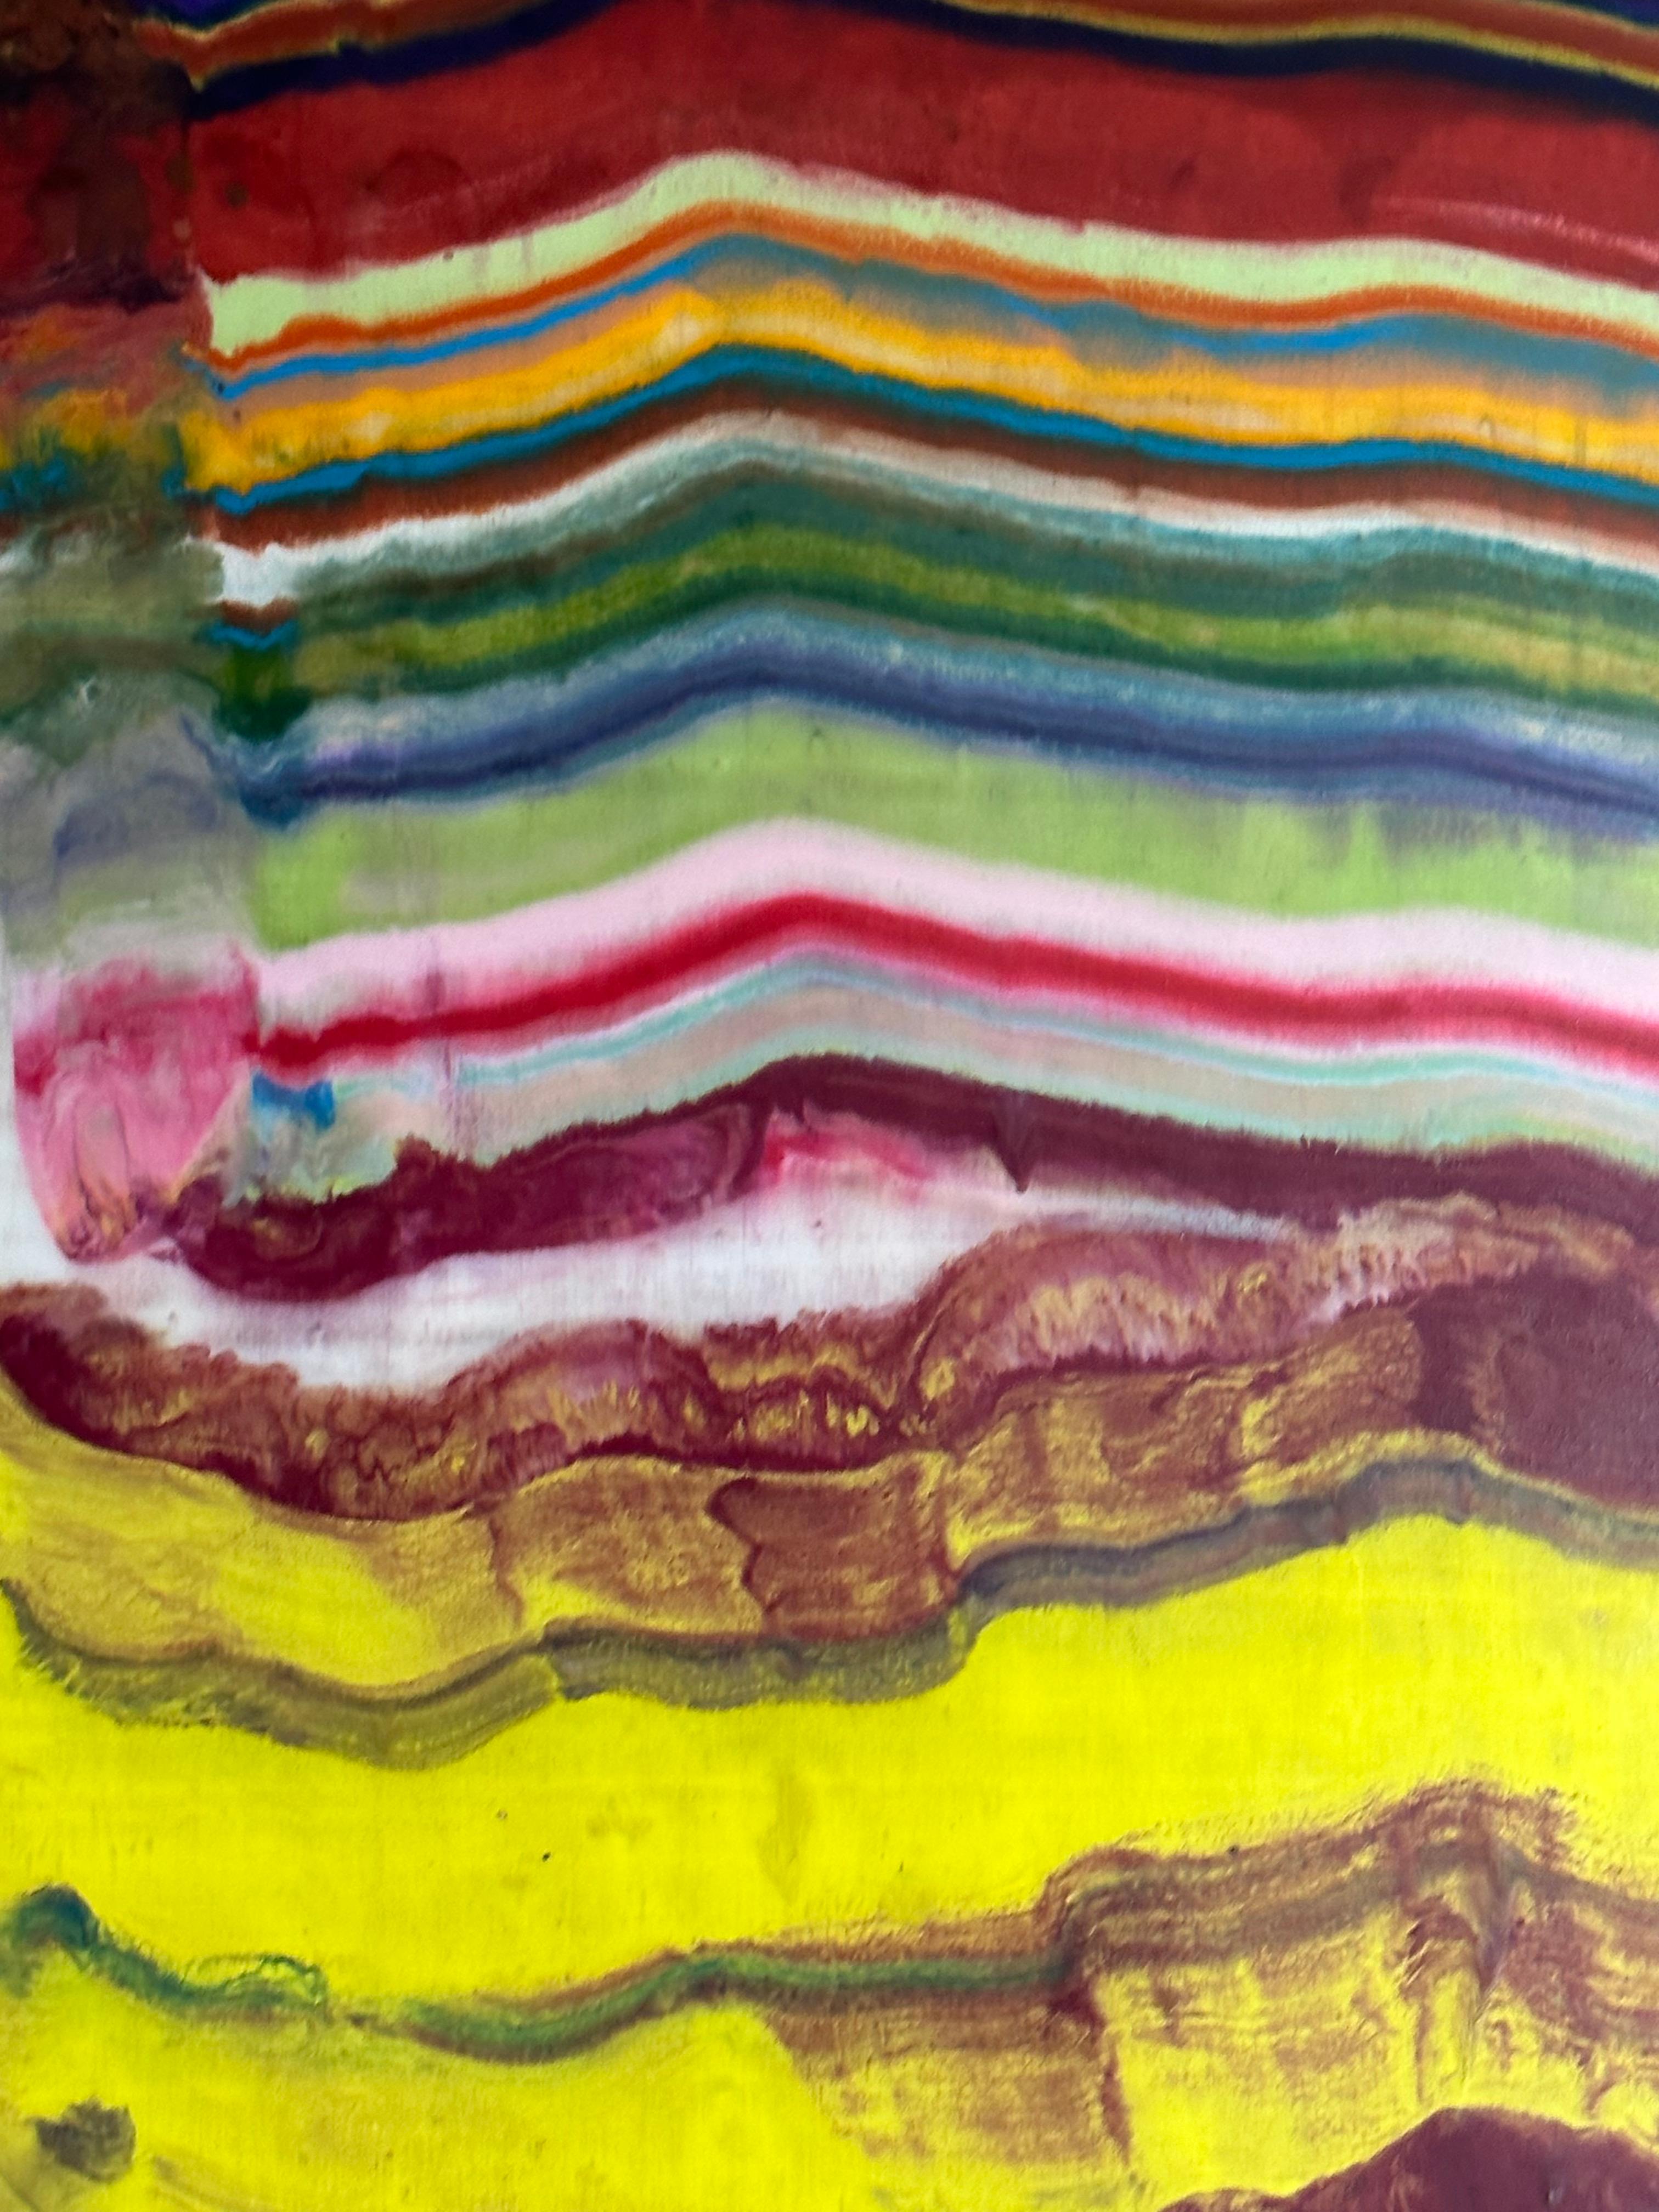 Ex Uno Plures 7 von Laura Moriarty ist eine mehrfarbige Enkaustik-Monotypie auf Kozo-Papier. Schichten von pigmentiertem Bienenwachs auf leichtem Papier ergeben eine wellenförmige Komposition, die an Schichten der Erdkruste und geologische